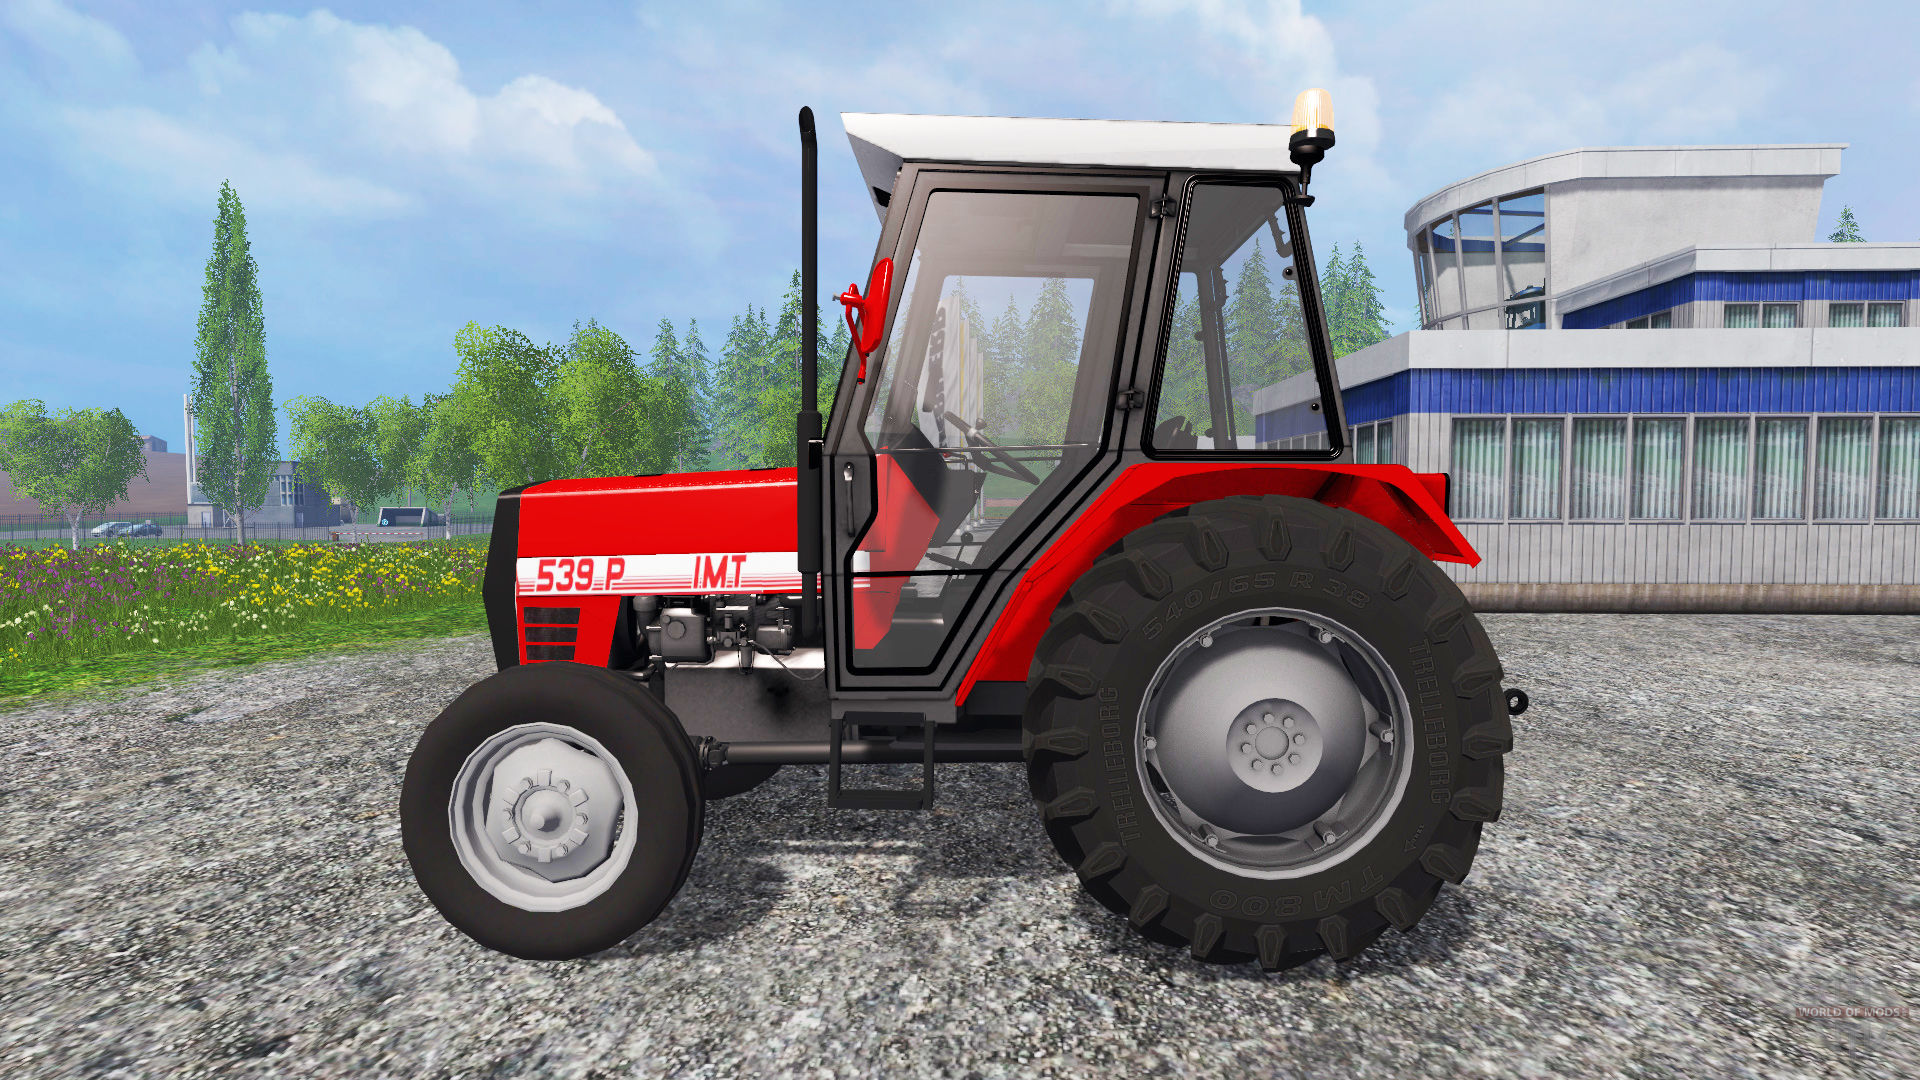 IMT 539 P v2.0 for Farming Simulator 2015